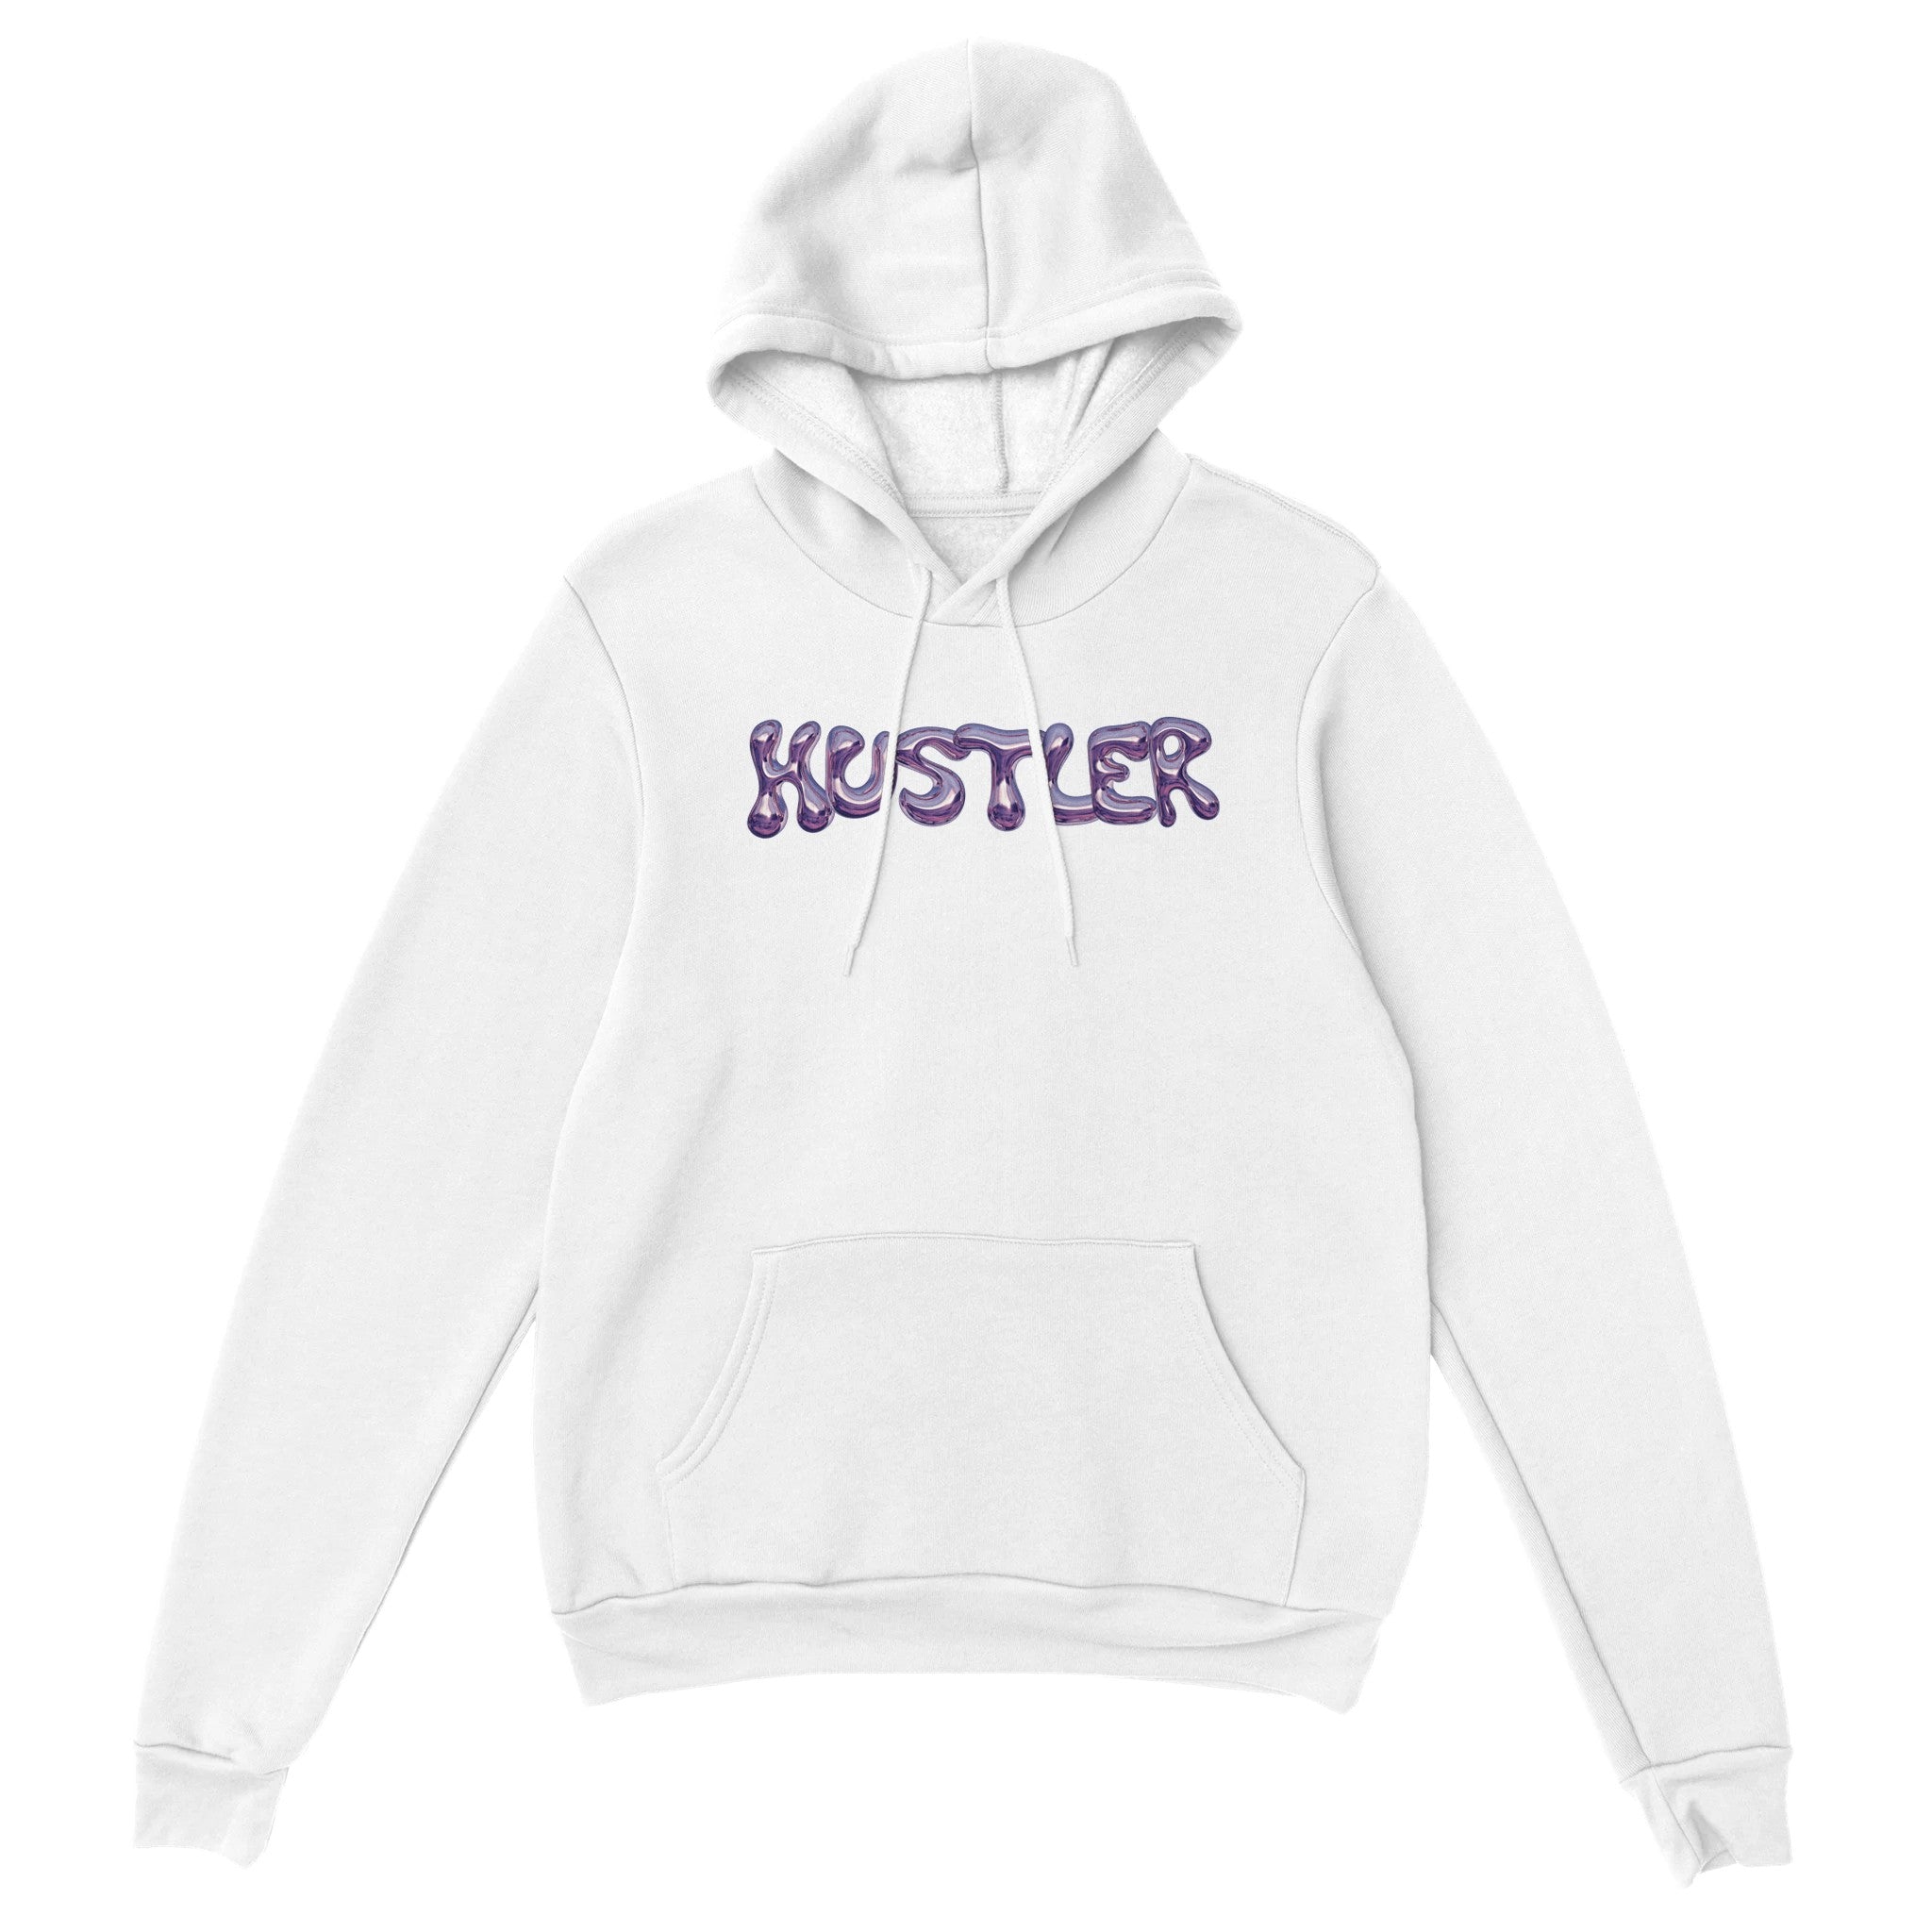 'Hustler' hoodie - In Print We Trust